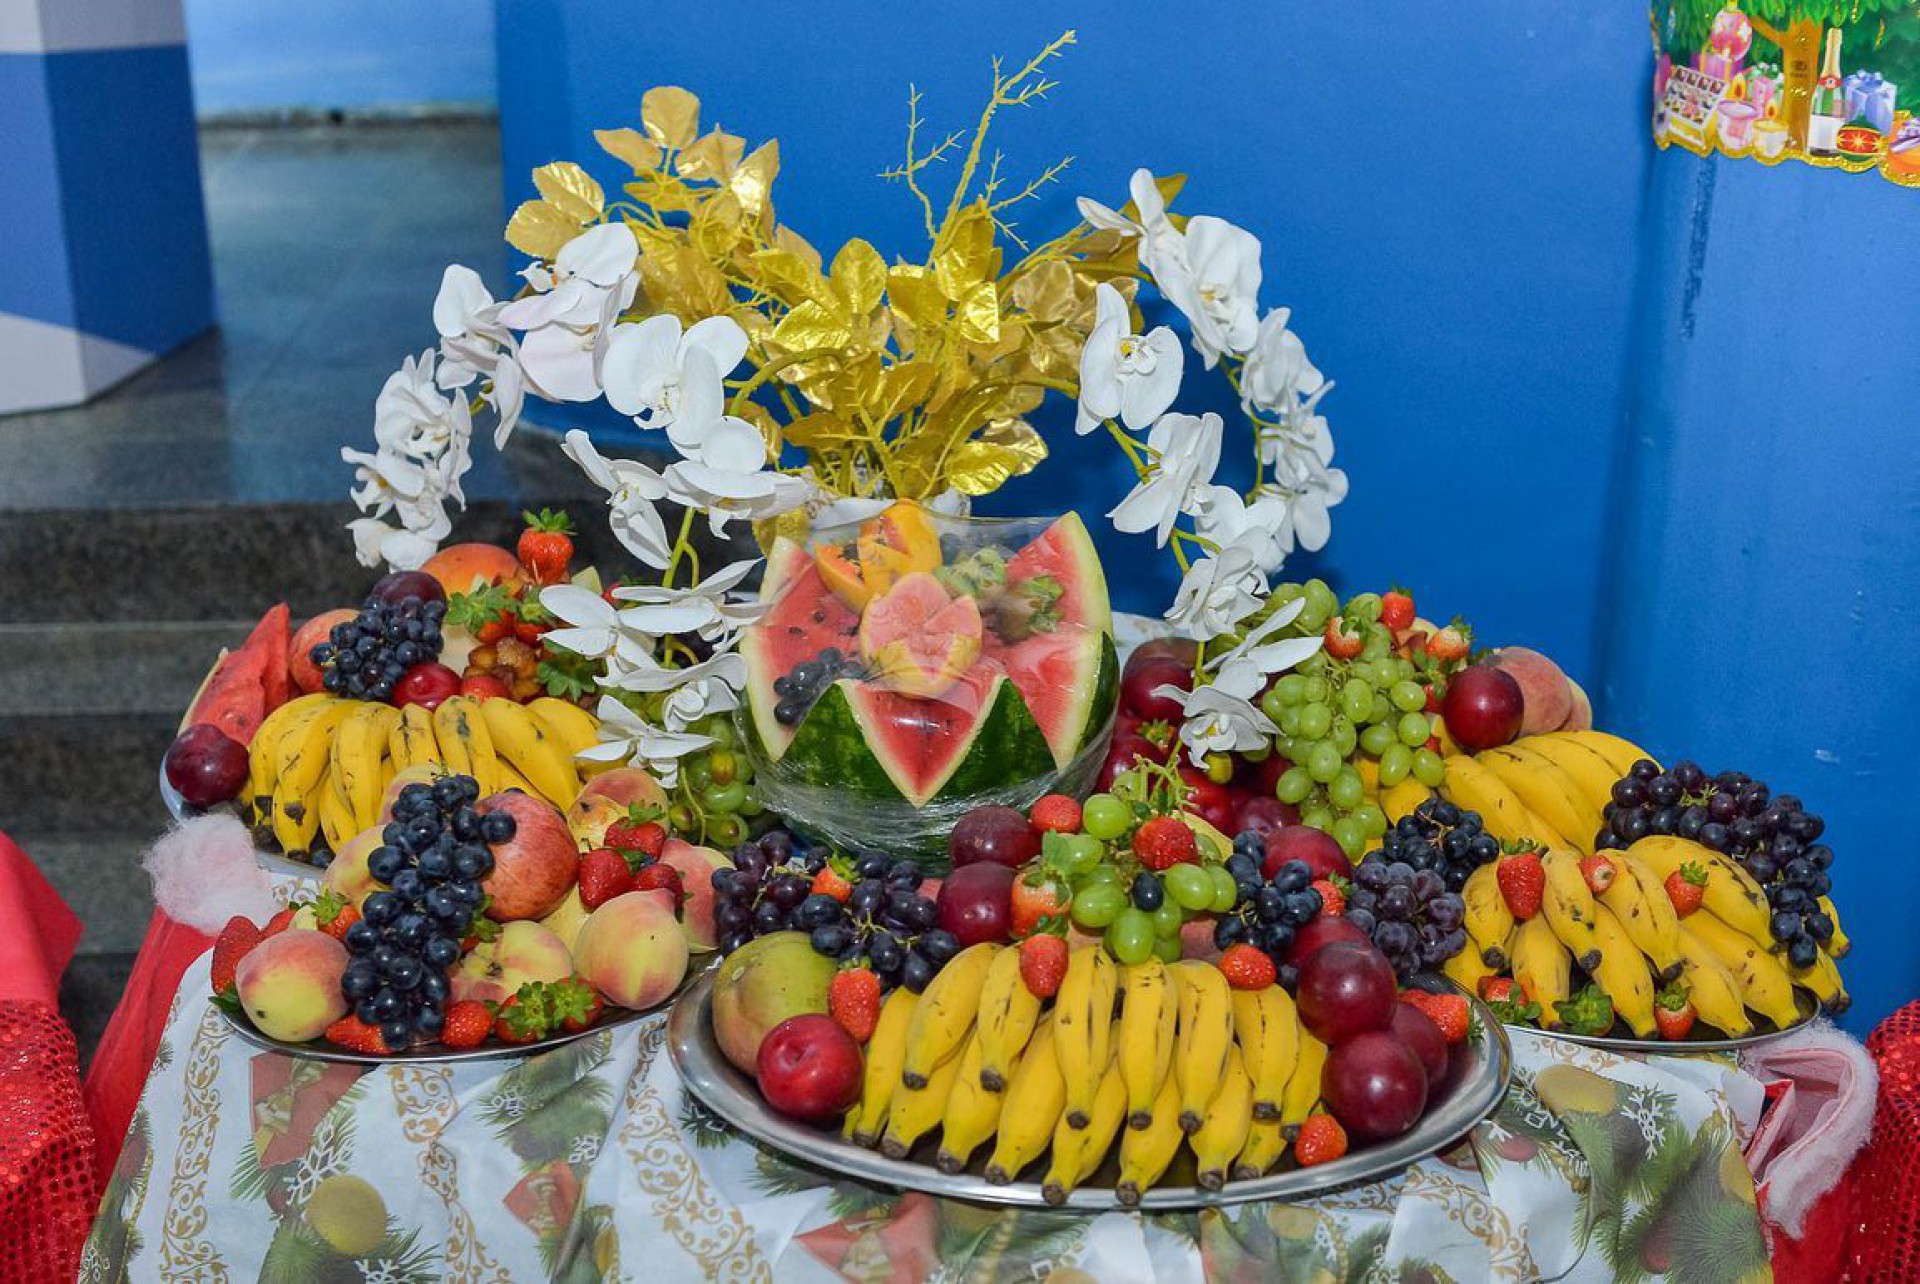 Deliciosas frutas foram distribuídas junto ao jantar - Divulgação / Eduardo Hollanda